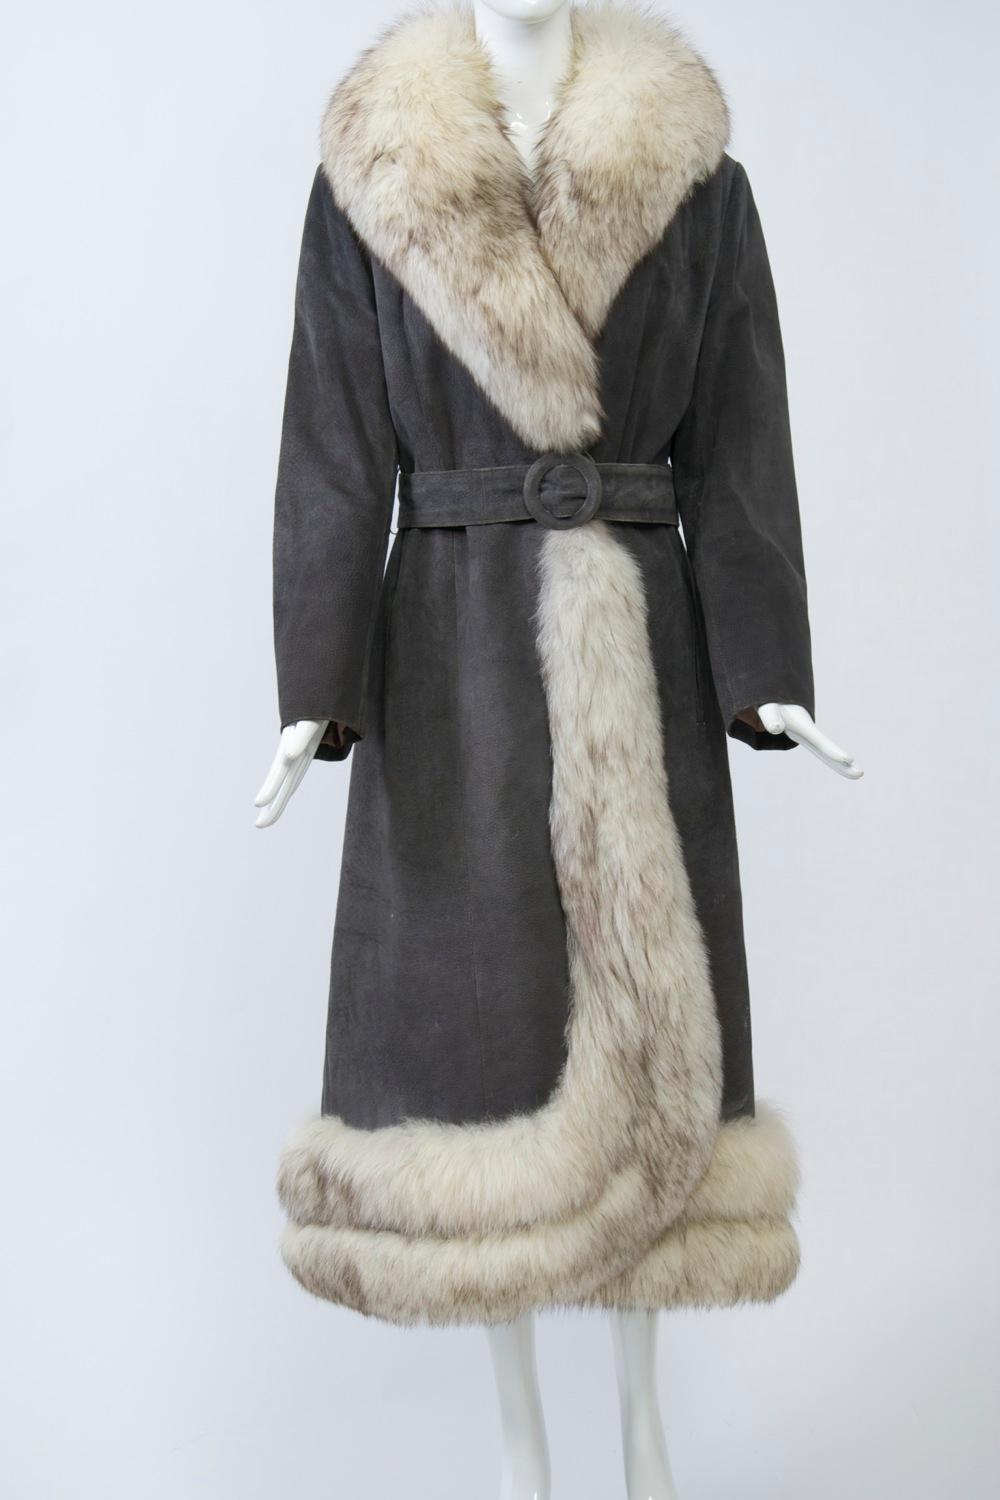 manteau des années 1970 réalisé en daim de porc gris et doté d'une garniture en renard blanc pour le col châle luxuriant et la garniture avant qui contourne l'ourlet. Une ceinture automatique avec boucle encercle la taille qui se ferme à l'aide d'un